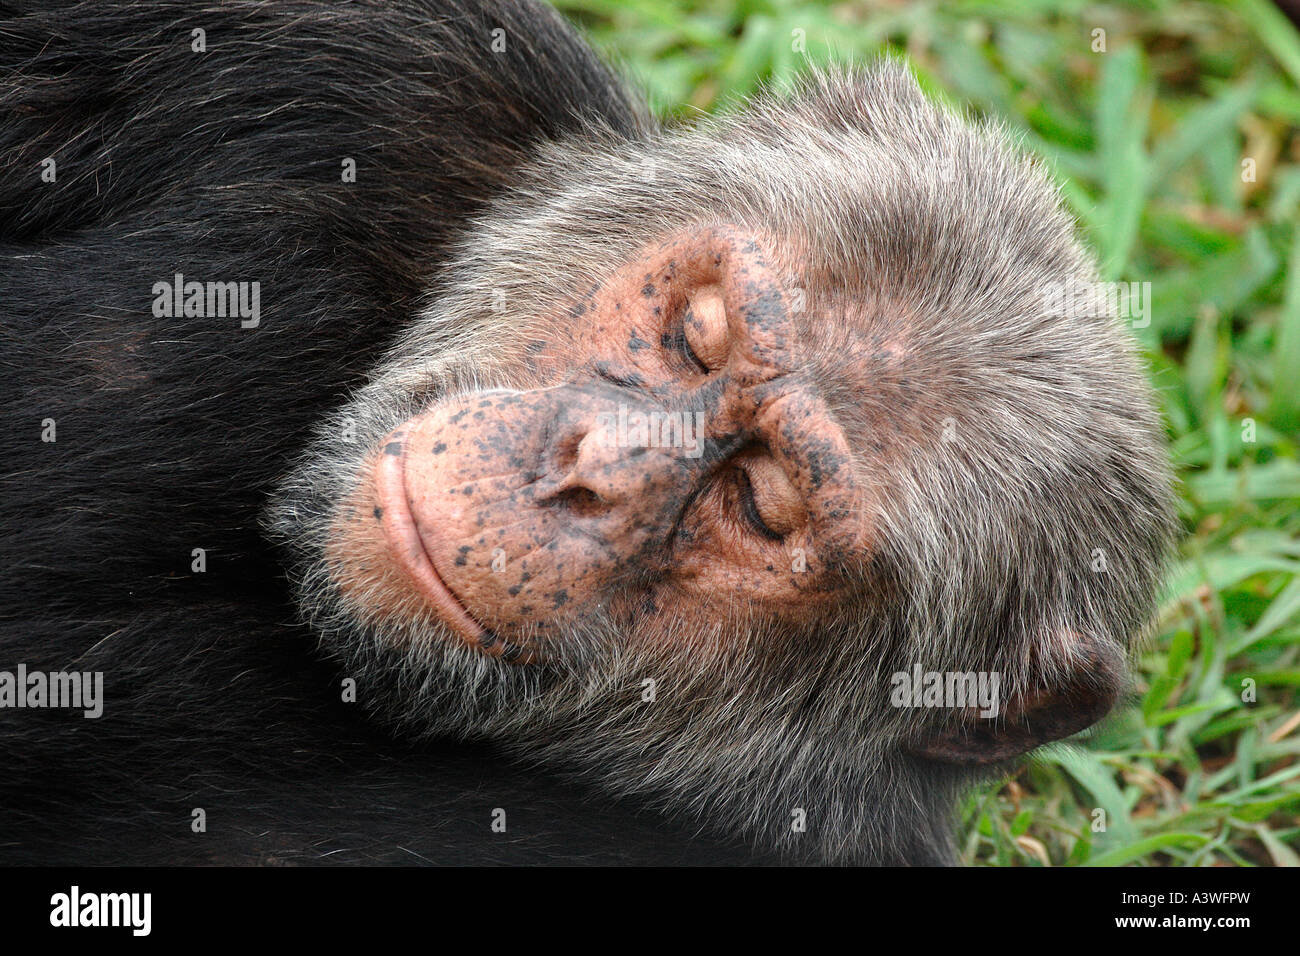 Uno scimpanzé Pan troglodytes isola Ngamba Lake Victoria Uganda ritratto di ingrigimento precoce vecchio maschio cercando in Africa Foto Stock